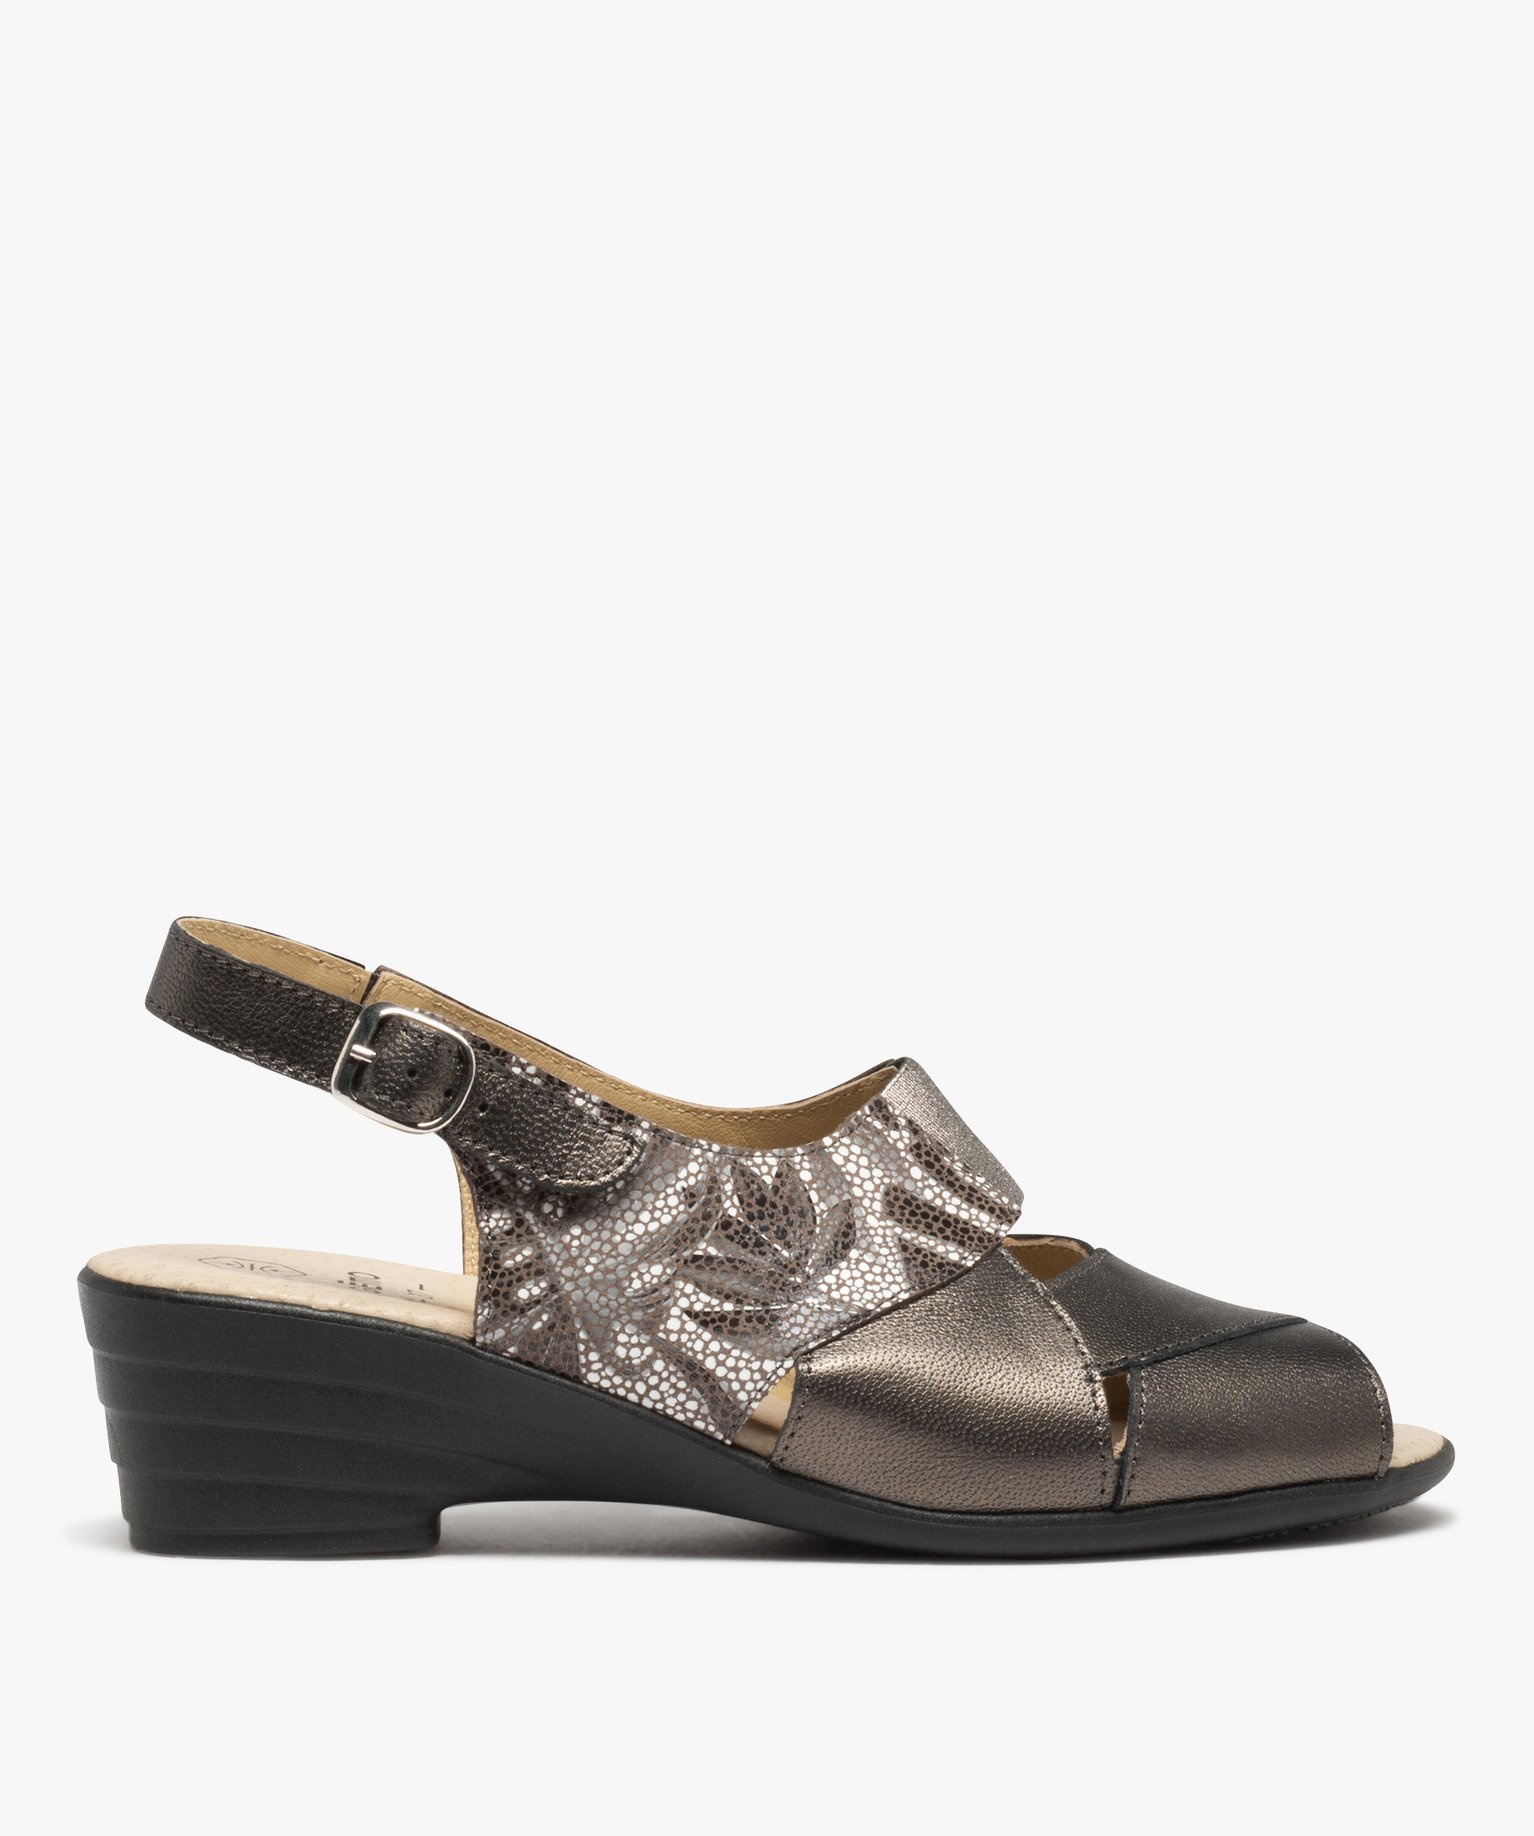 sandales confort femme en cuir dessus metallise gris sandales a talon